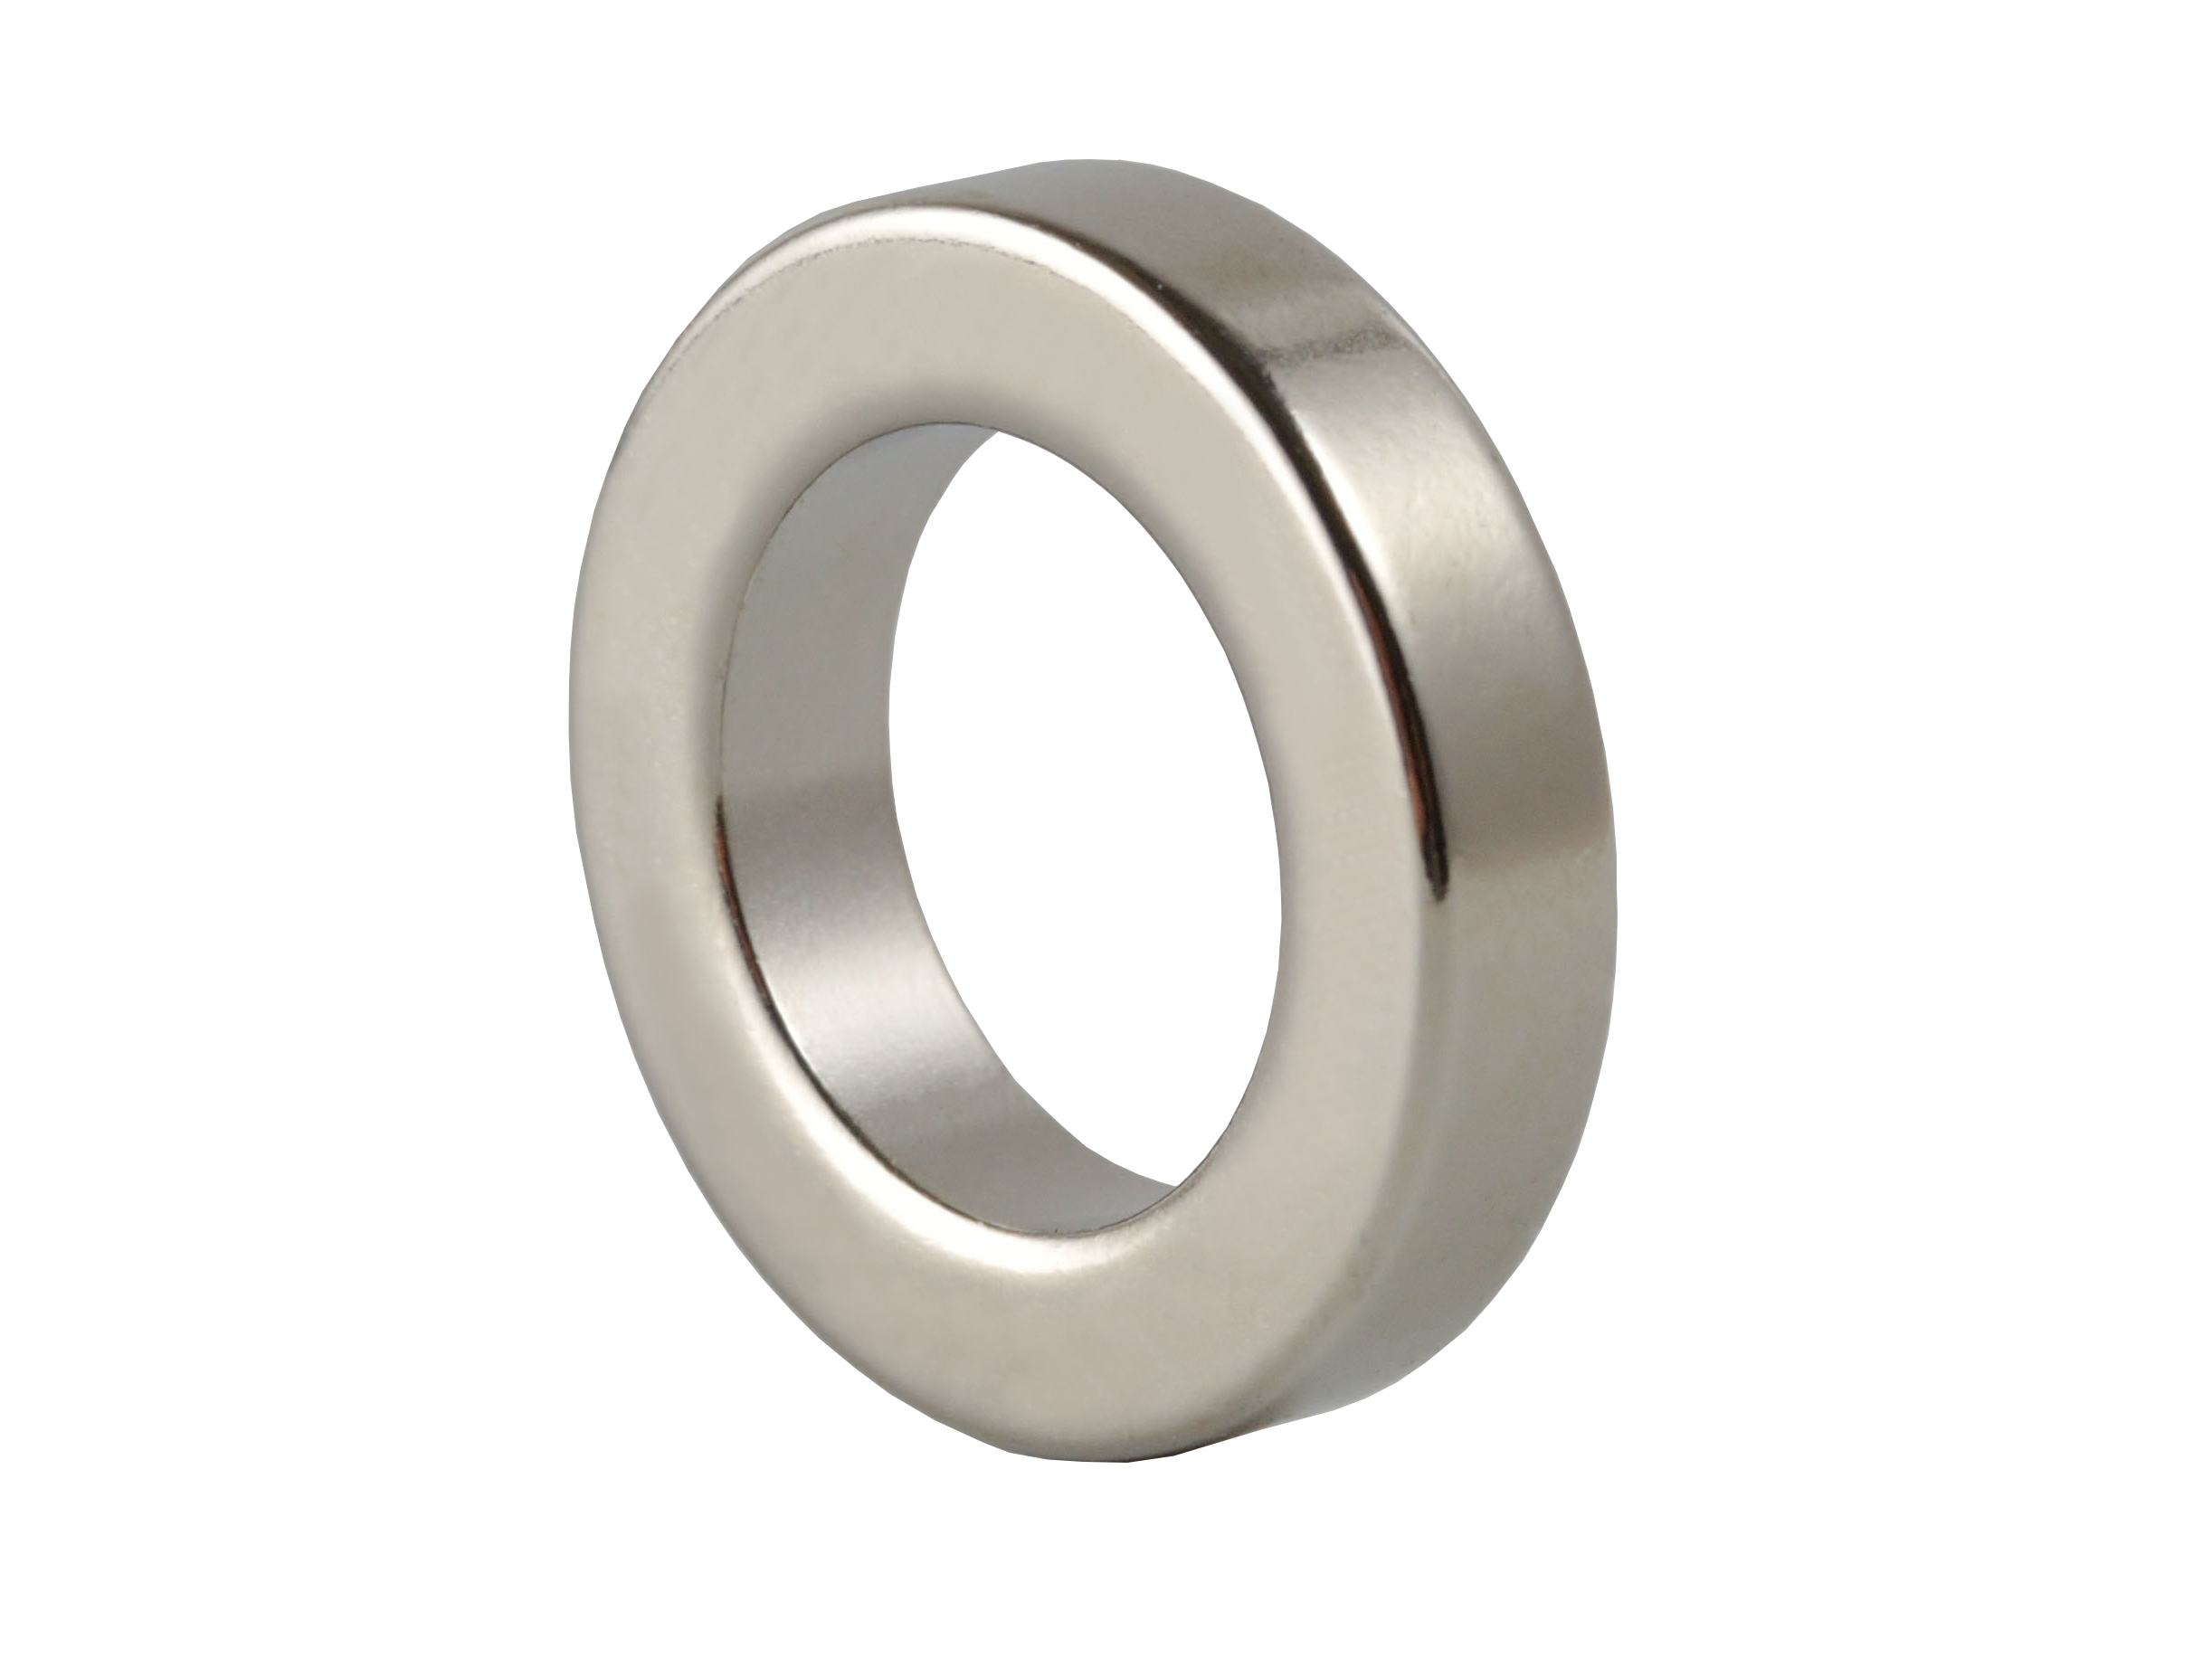 Ring‑Shaped Neodymium Magnet NOR156